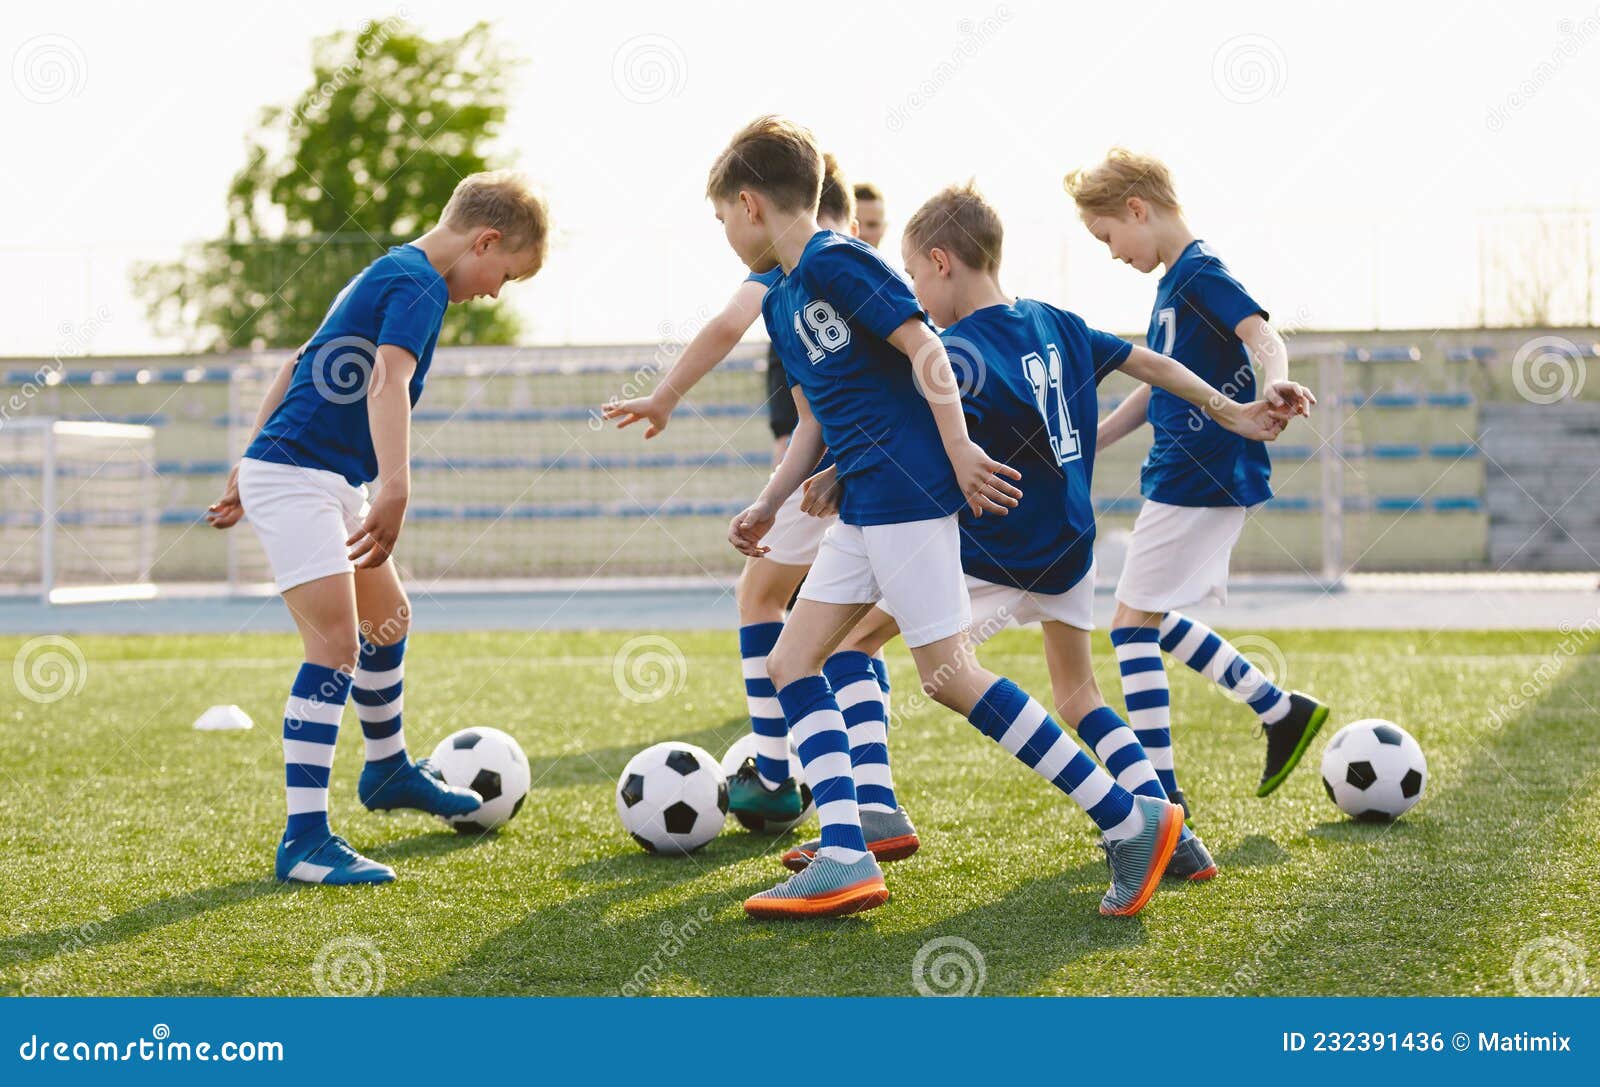 Equipo De Fútbol Con De Fútbol Azul En Clase De Entrenamiento Con Bolas Foto de archivo - Imagen de aptitud, bolas: 232391436